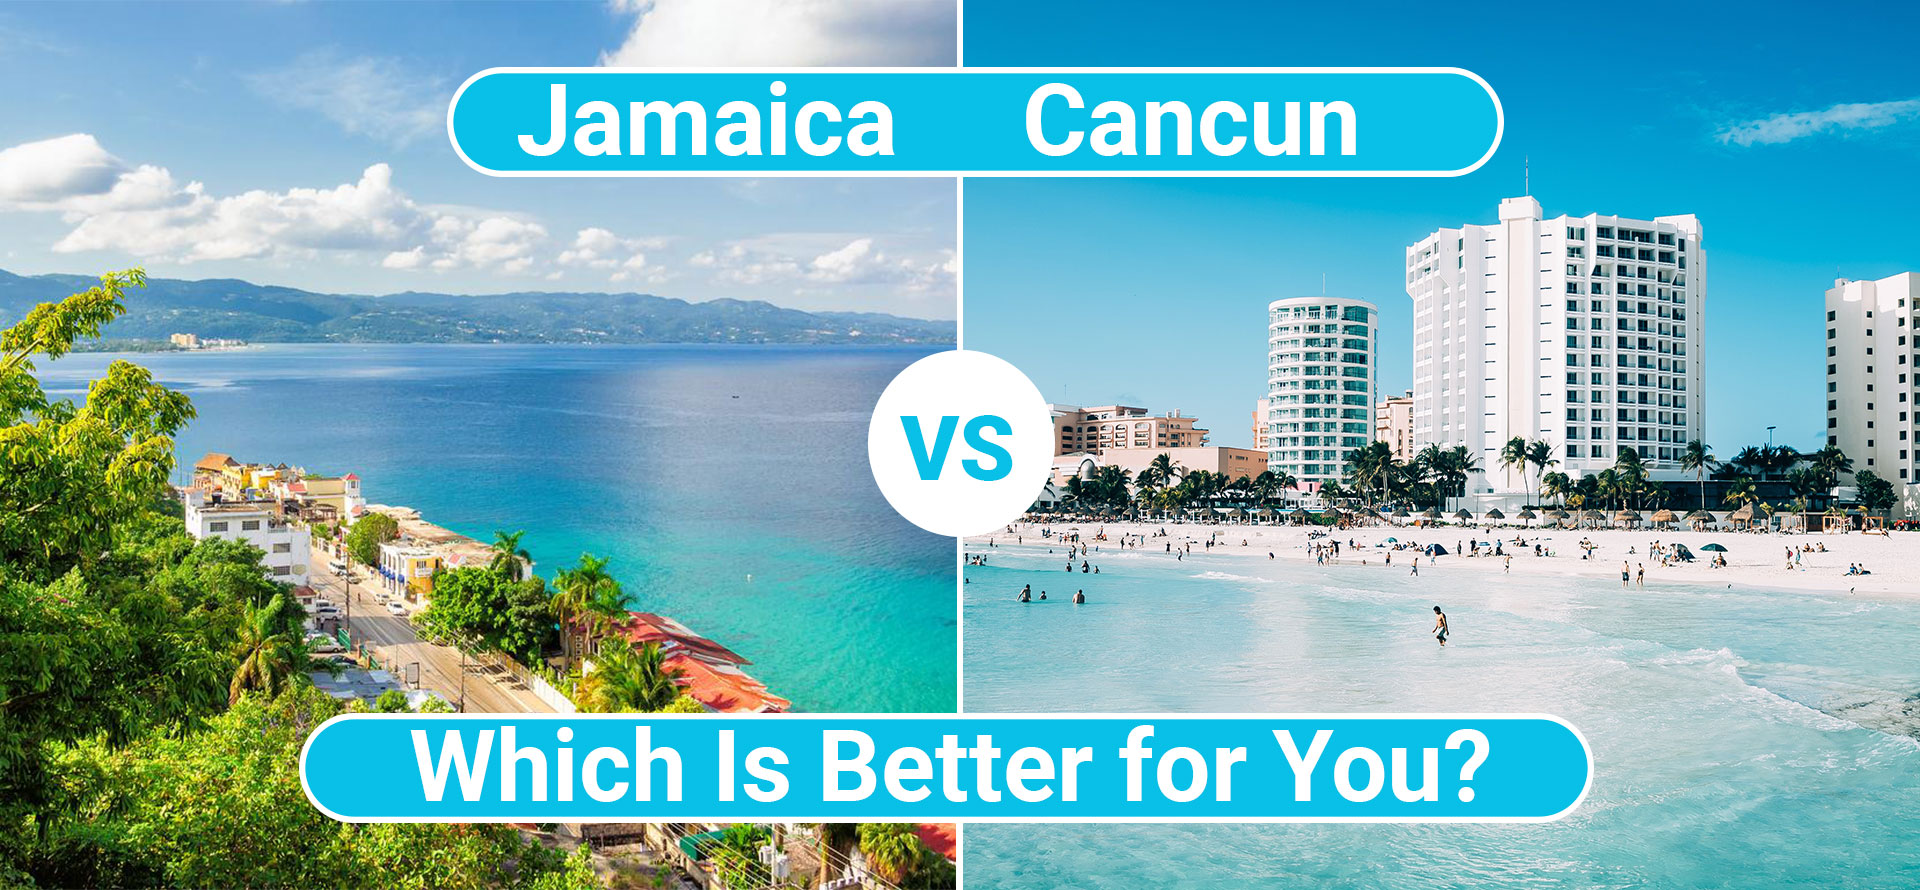 Jamaica vs cancun.